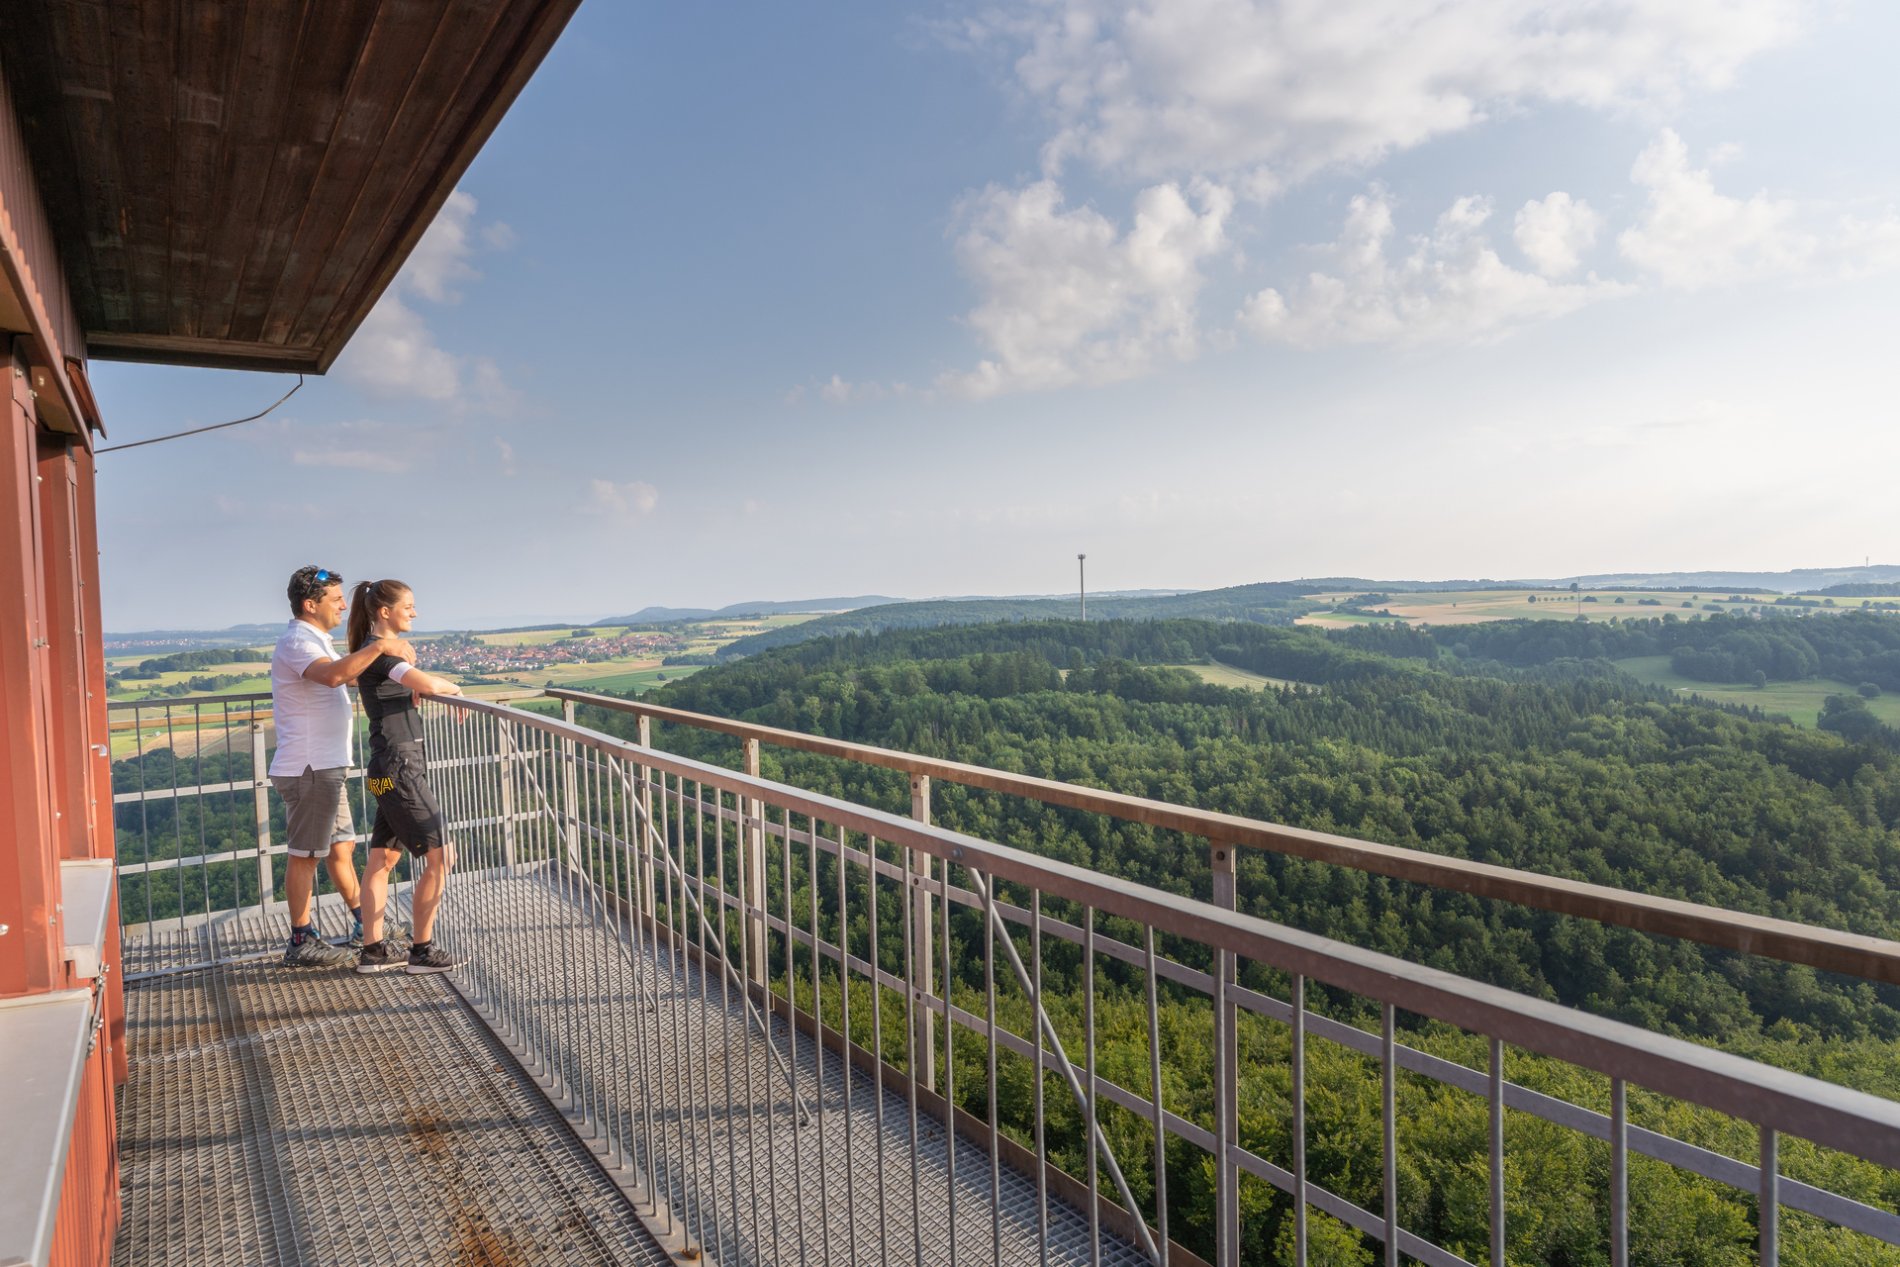 Zwei Personen stehen auf einer Aussichtsplattform aus Metall und lehnen sich an das Metallgeländer. Ringsherum ist ein weiter Ausblick über Wälder, Wiesen und ein Dorf am Horizont. Daneben ist eine rote Wand des Turms.